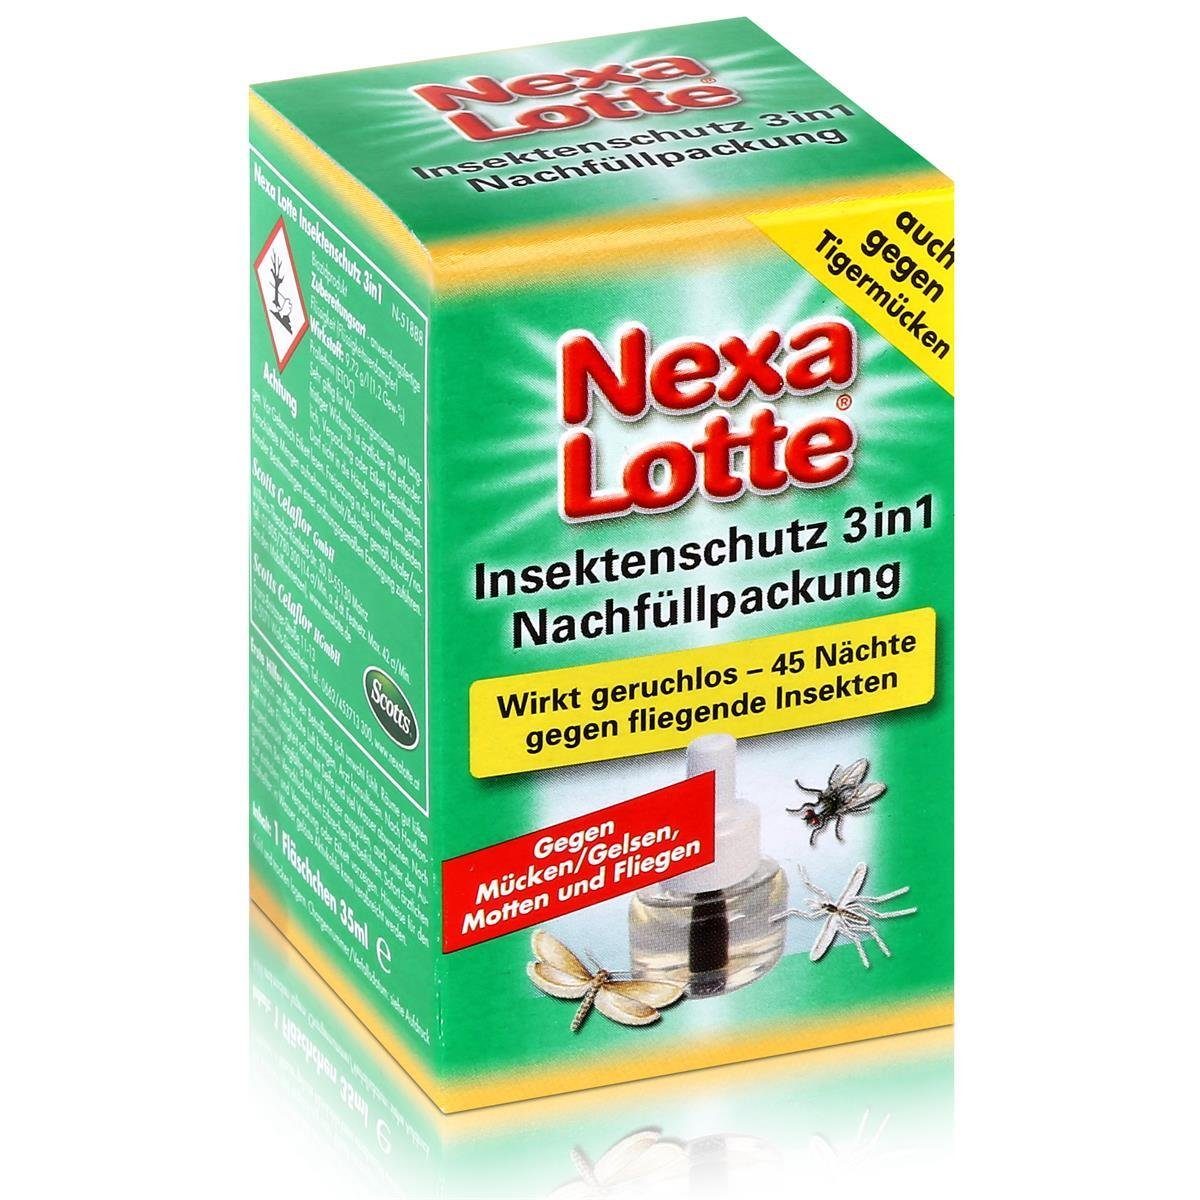 Nexa Lotte Insektenfalle Nexa Lotte Insektenschutz 3in1 Nachfüllpackung - wirkt geruchlos